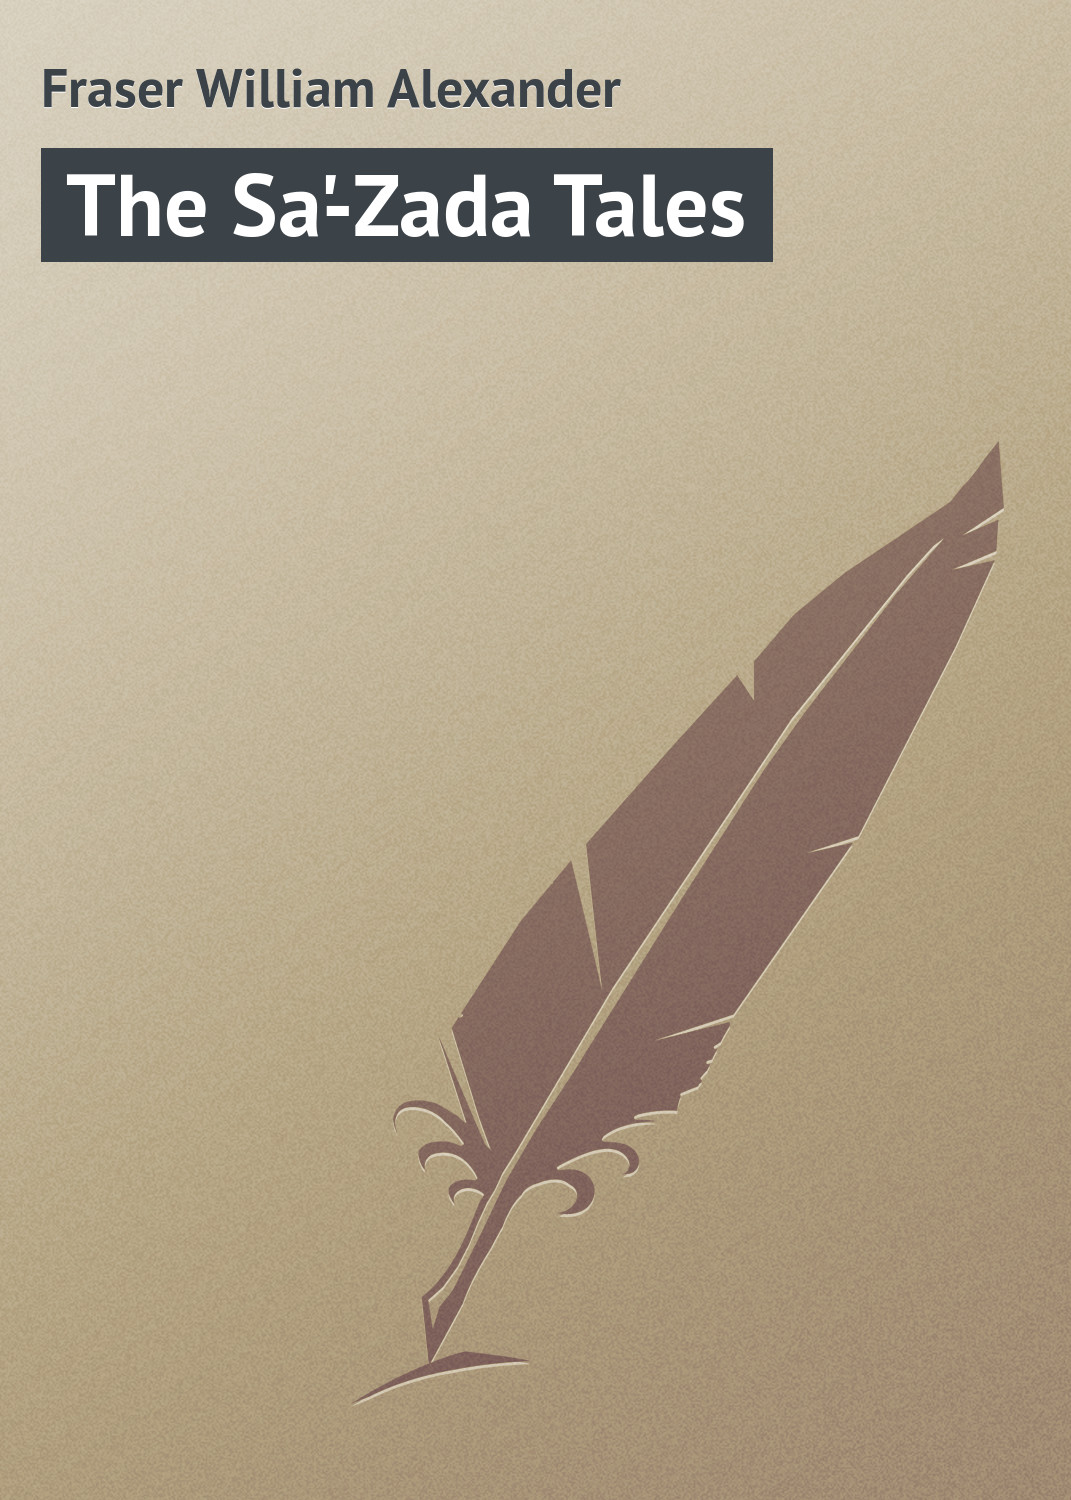 Книга The Sa'-Zada Tales из серии , созданная William Fraser, может относится к жанру Природа и животные, Зарубежная классика, Зарубежные детские книги. Стоимость книги The Sa'-Zada Tales  с идентификатором 23156347 составляет 5.99 руб.